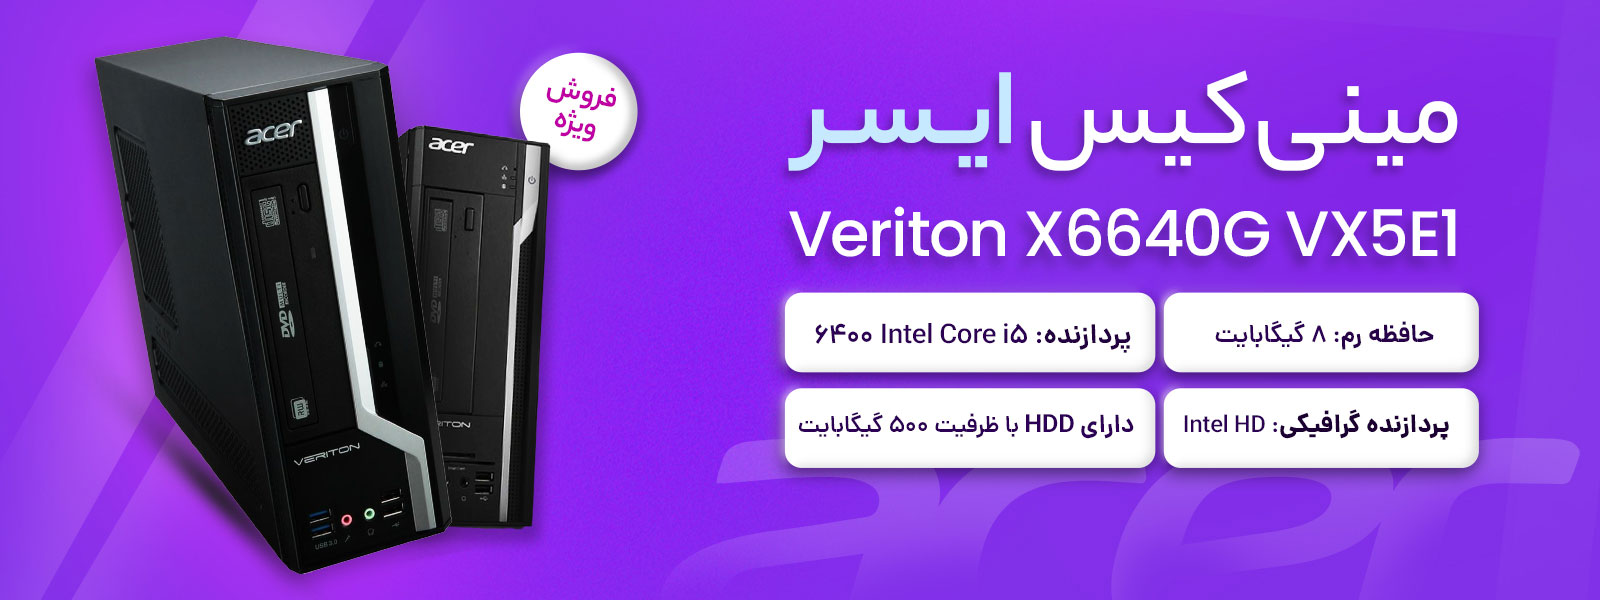 بنر فروش مینی کیس استوک ایسر Veriton X6640G VX5E1